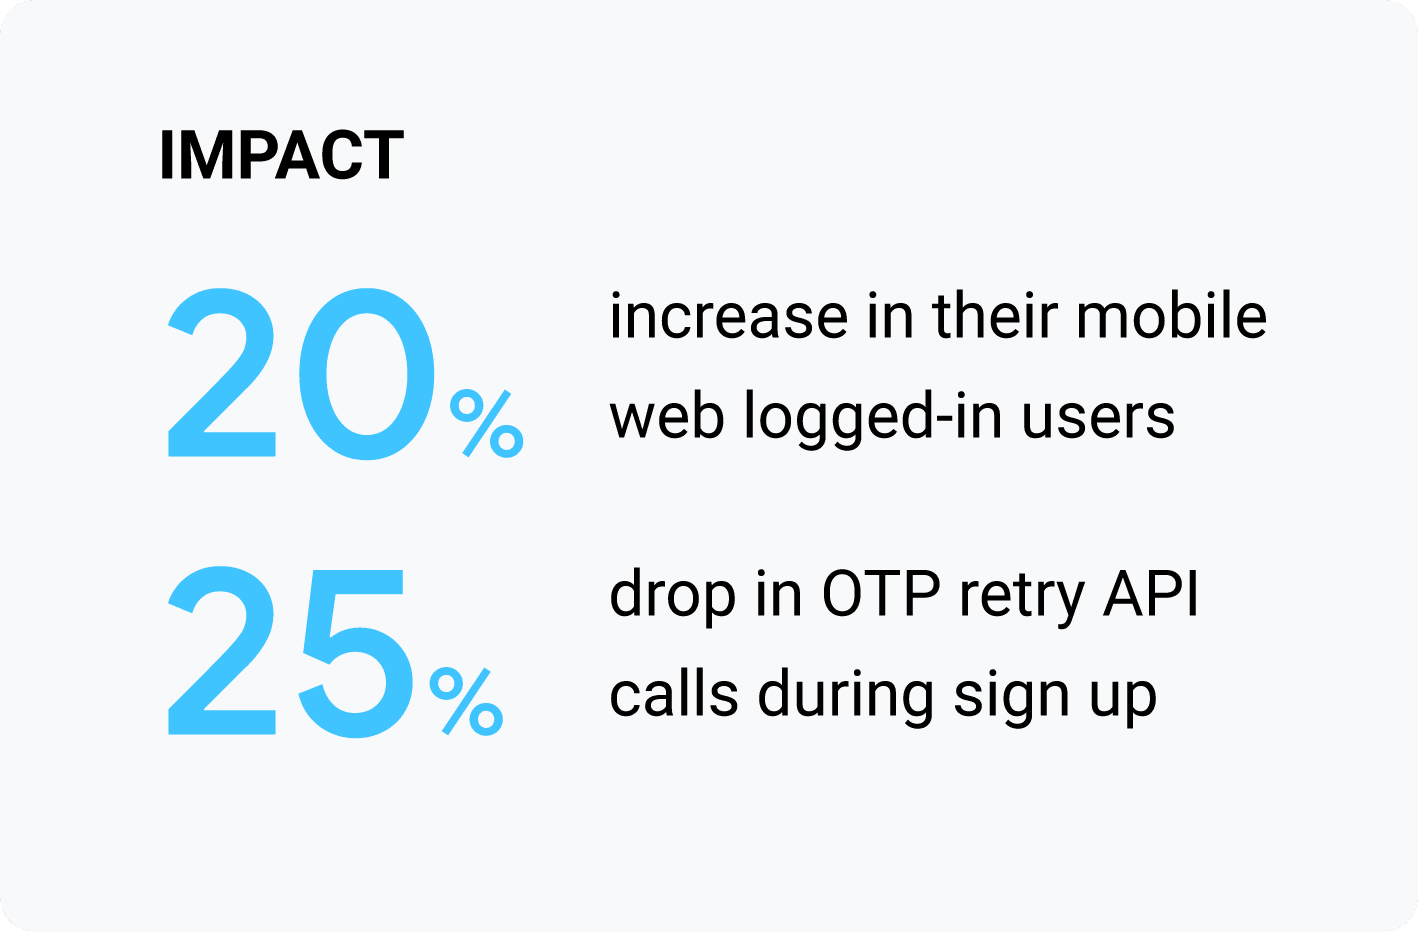 असर: मोबाइल वेब से लॉग-इन करने वाले उपयोगकर्ताओं की संख्या में 20% की बढ़ोतरी हुई. साइन अप के दौरान ओटीपी के लिए दोबारा कोशिश करने वाले एपीआई कॉल में 25% की कमी आई.